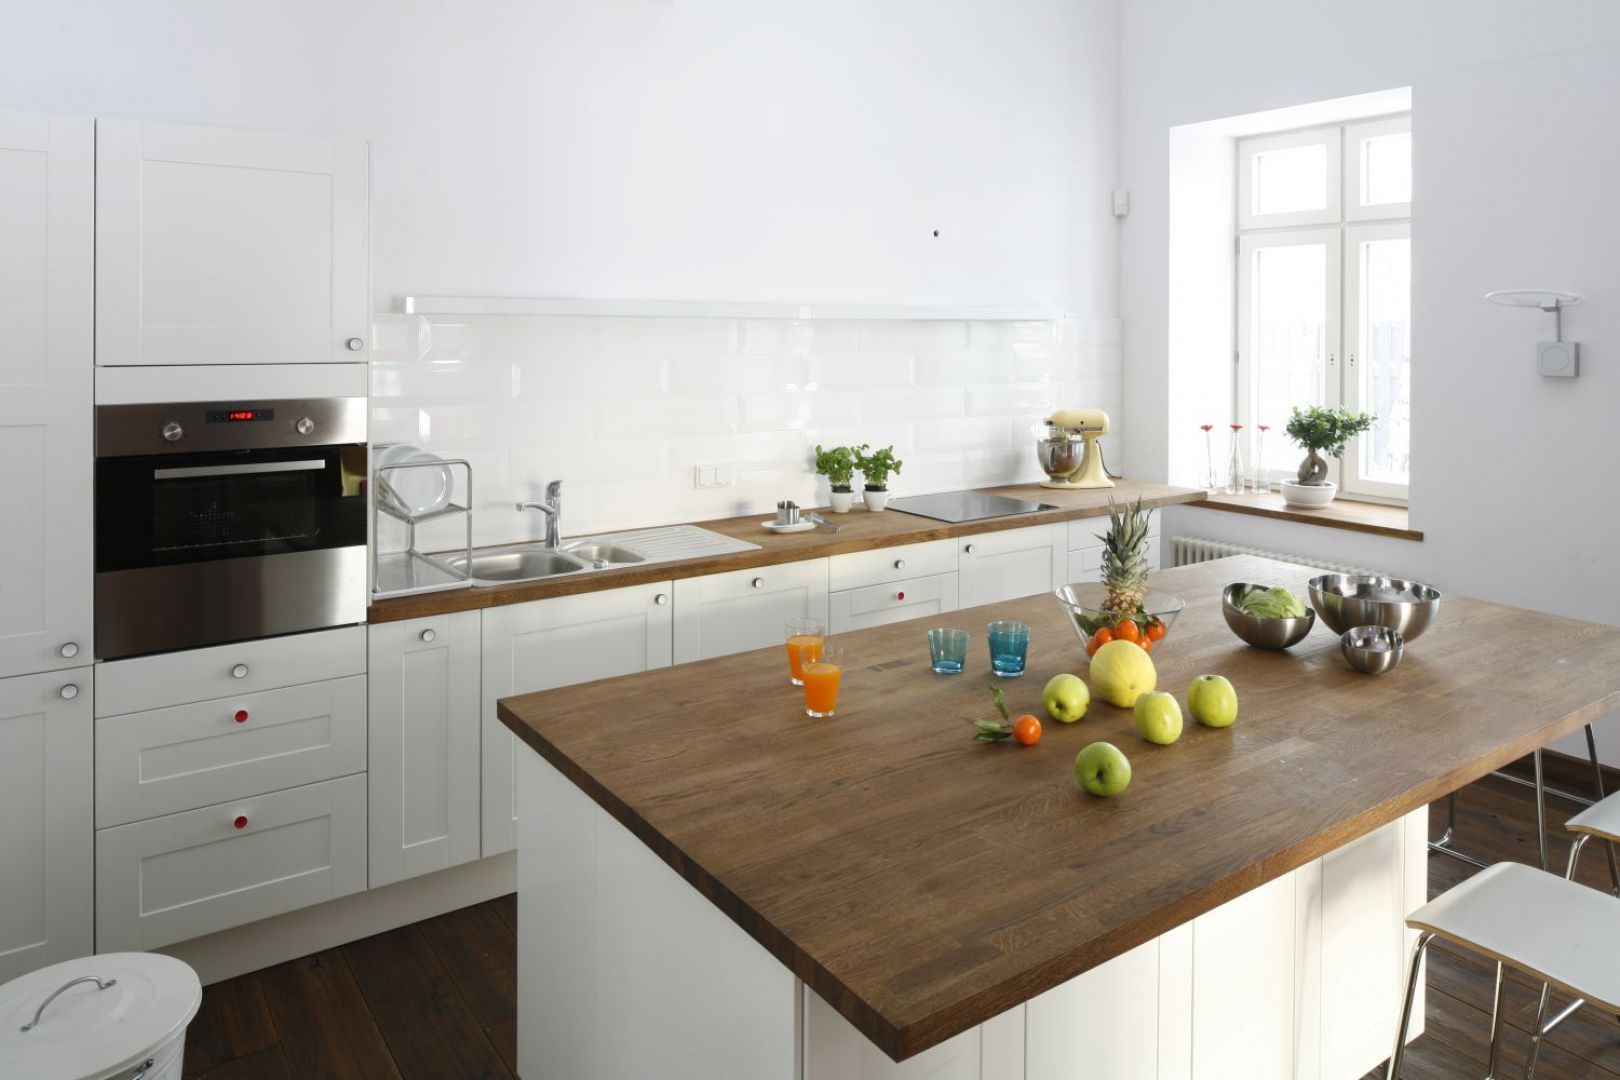 Skąpana w czystej bieli aranżacja kuchni stanowi ciekawy kontrast dla ceglanych ścian obecnych w całym domu. Projekt Konrad Grodziński. Fot. Bartosz Jarosz.